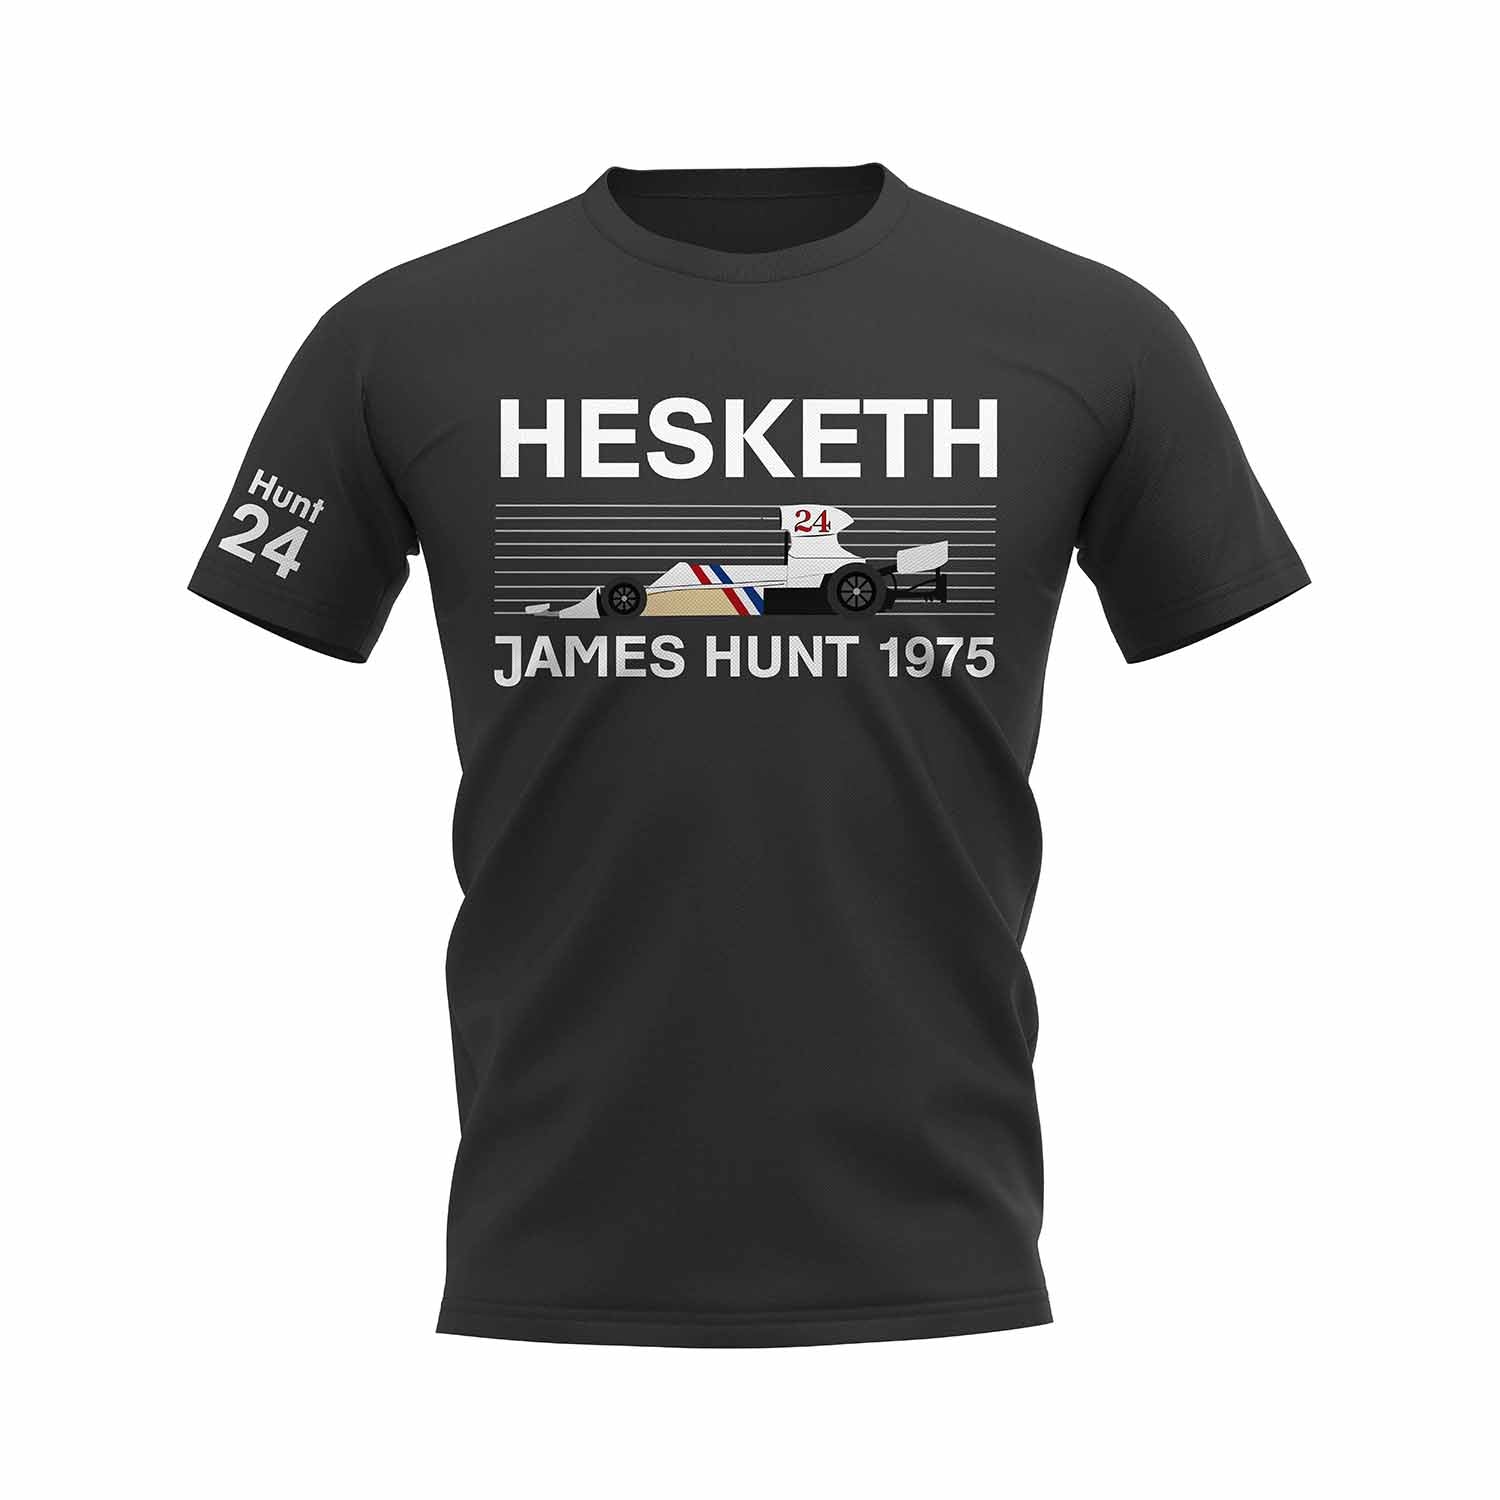 James Hunt 1975 Hesketh T-Shirt (Black)